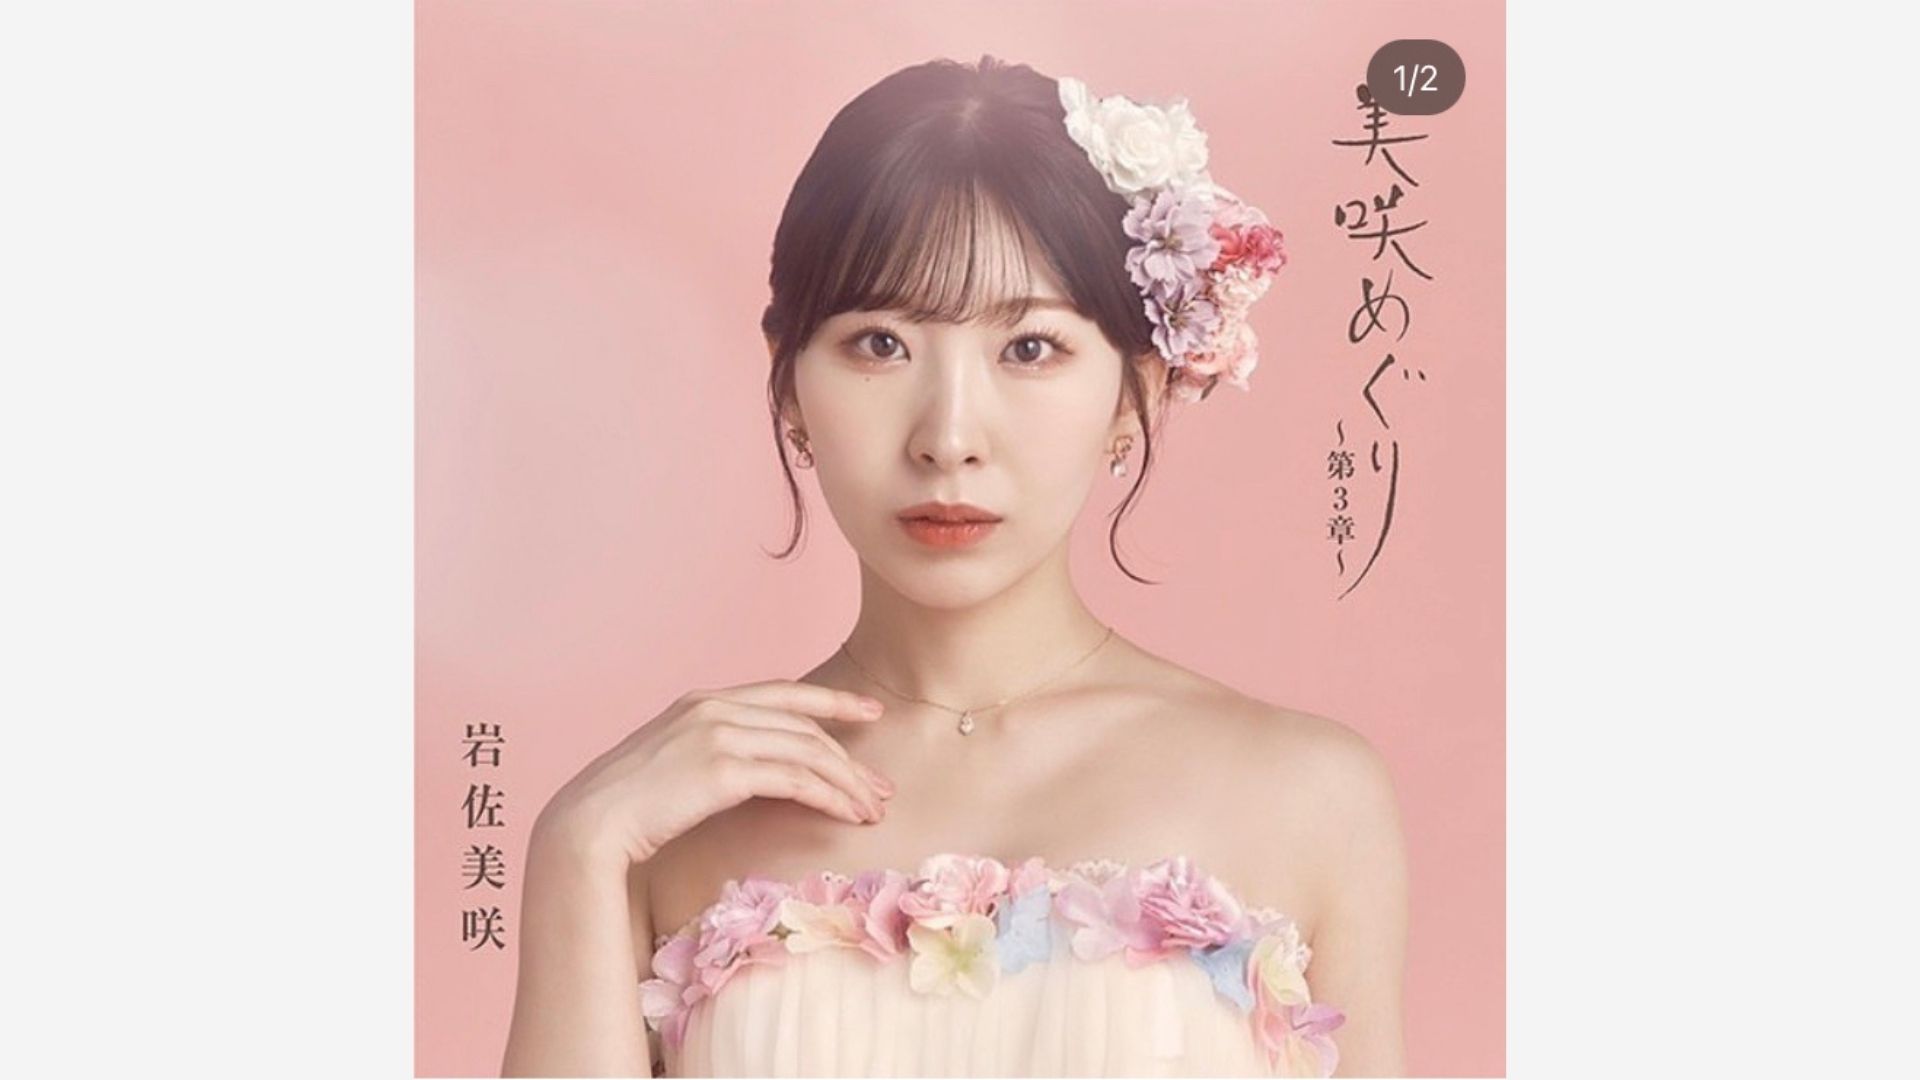 岩佐美咲様、10月4日リリースアルバム「美咲めぐり〜第3章〜」にて当店ドレスをご着用いただきました。